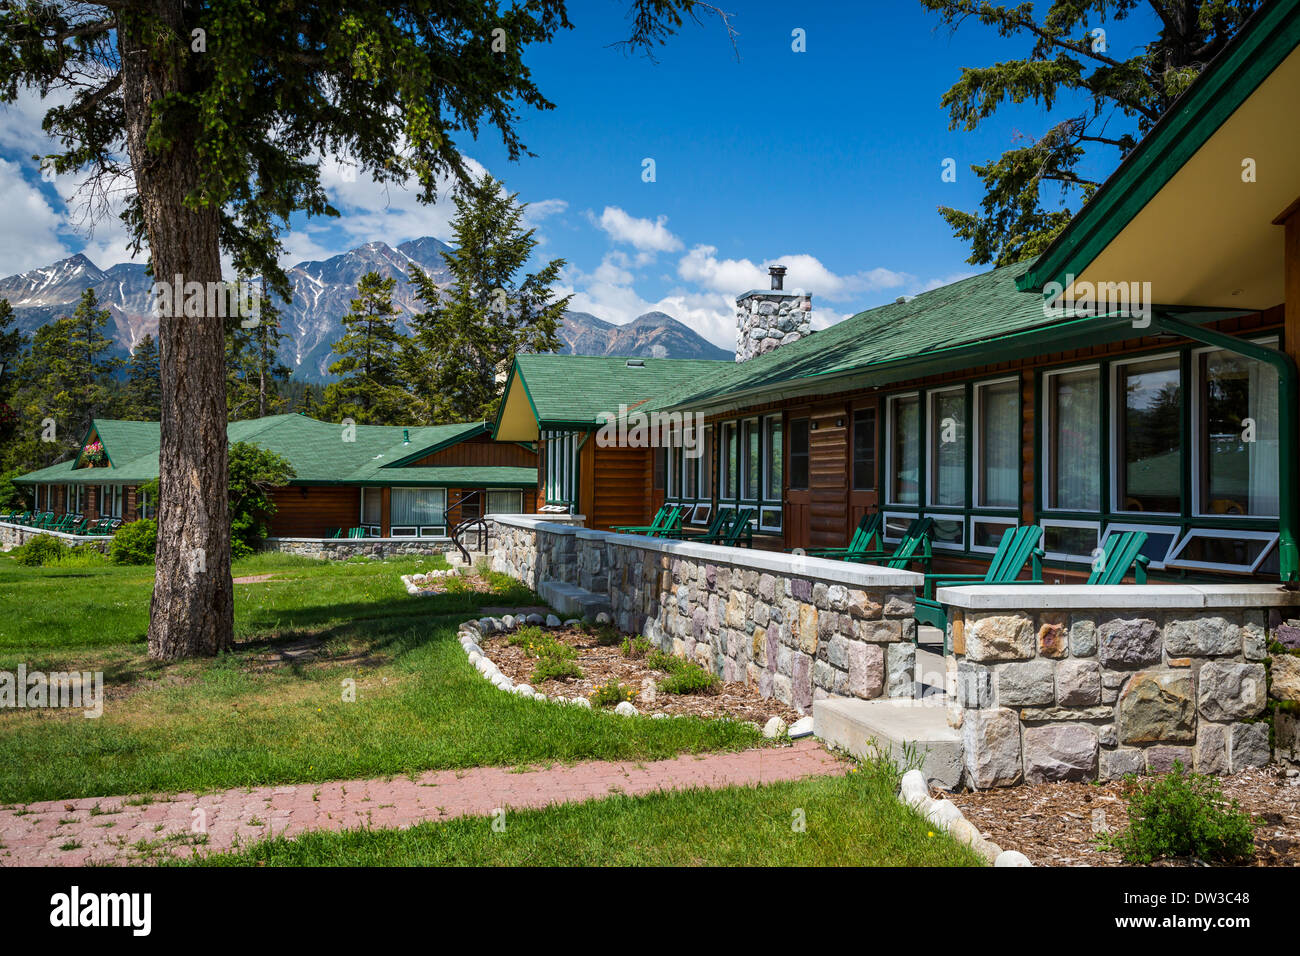 Le Fairmont Jasper Park Lodge de Jasper National Park, Alberta, Canada. Banque D'Images